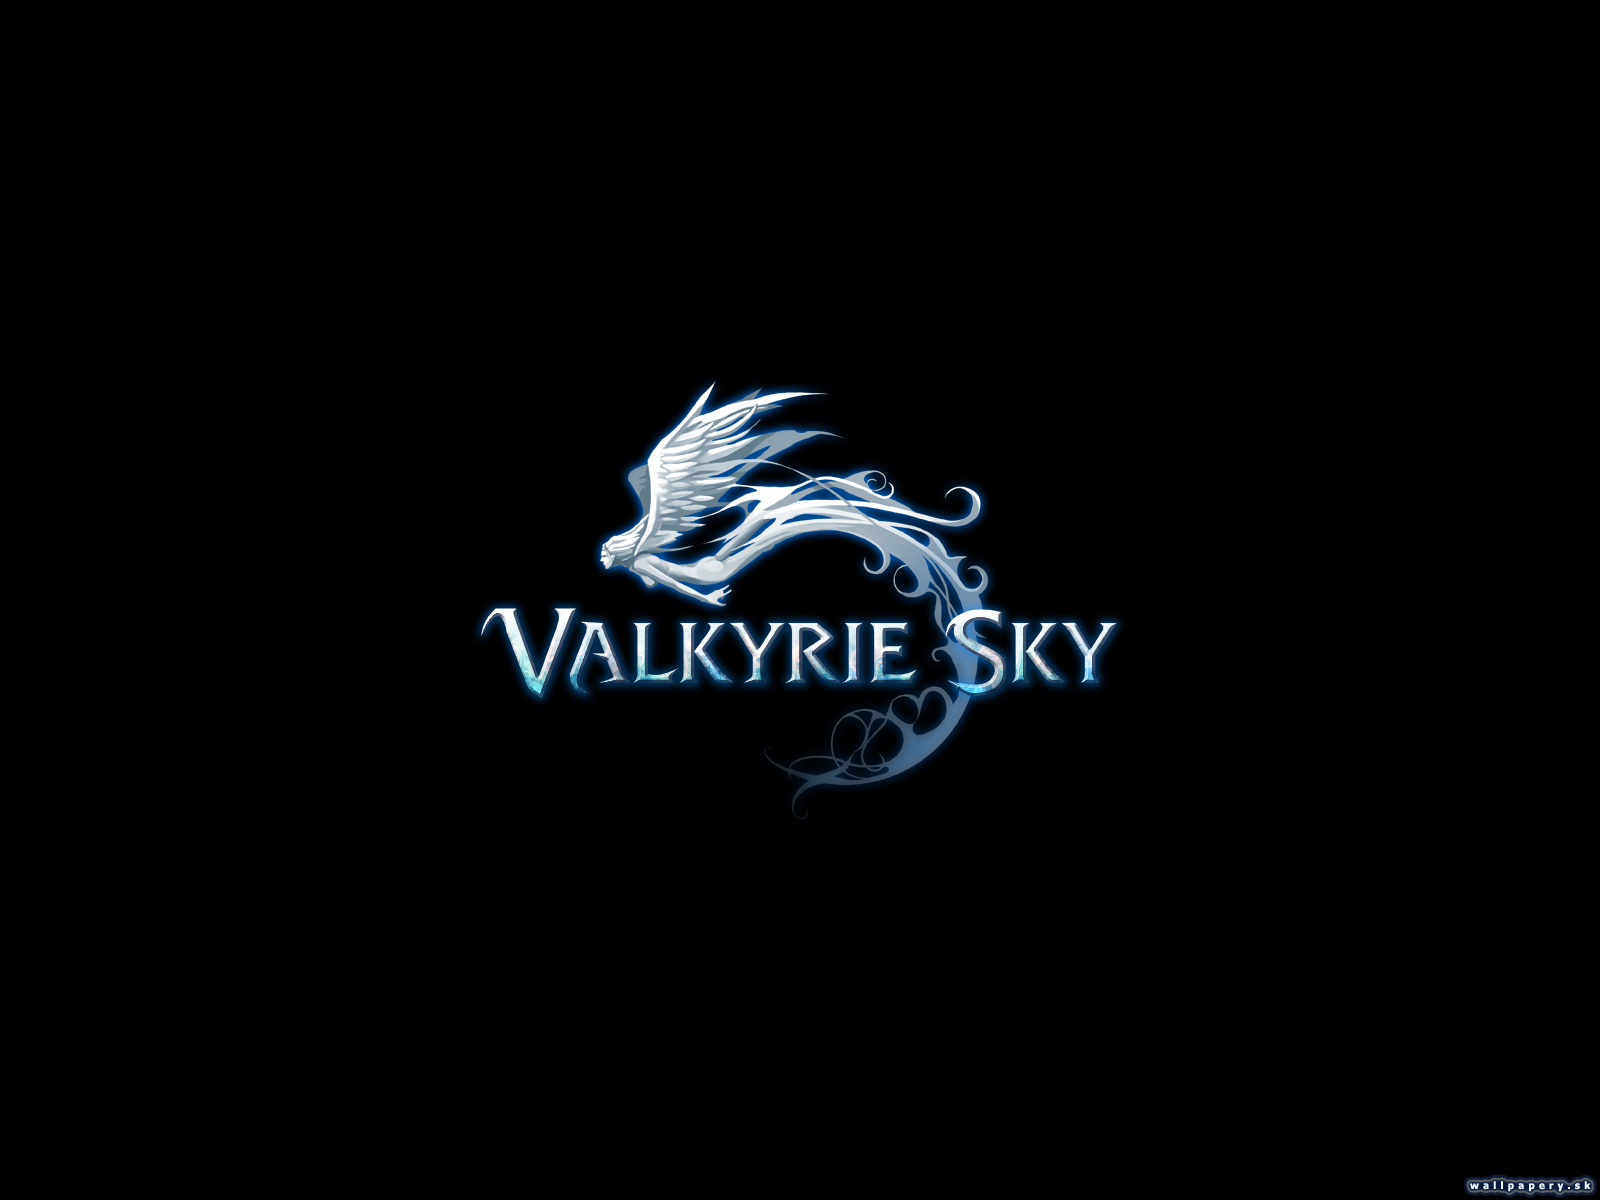 Valkyrie Sky - wallpaper 17